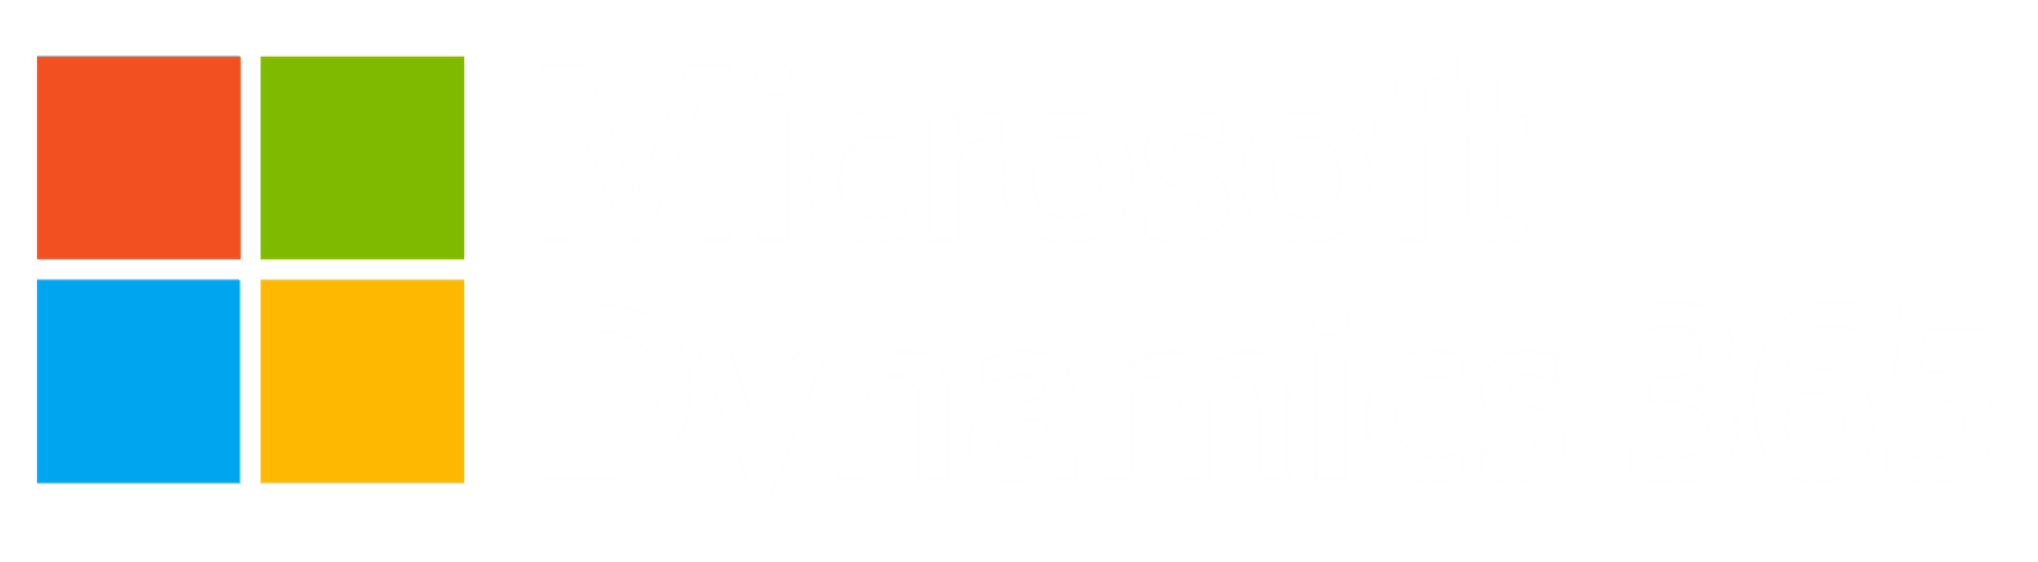 Microsoft Dynamics logo icon kleur_ letters wit